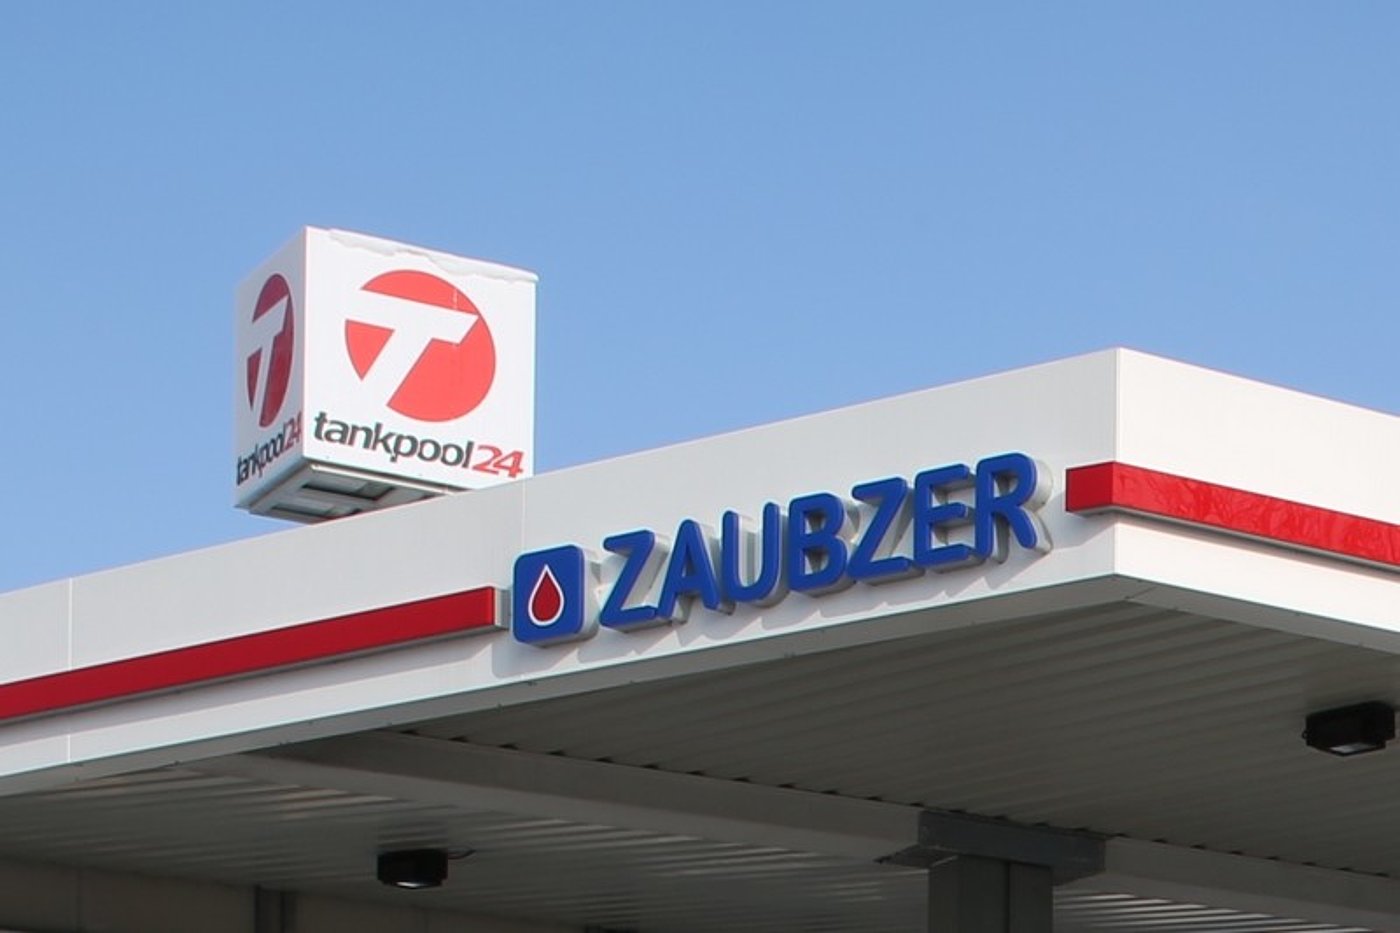 Tankstellen-Werbeschilder von Zaubzer und tankpool24